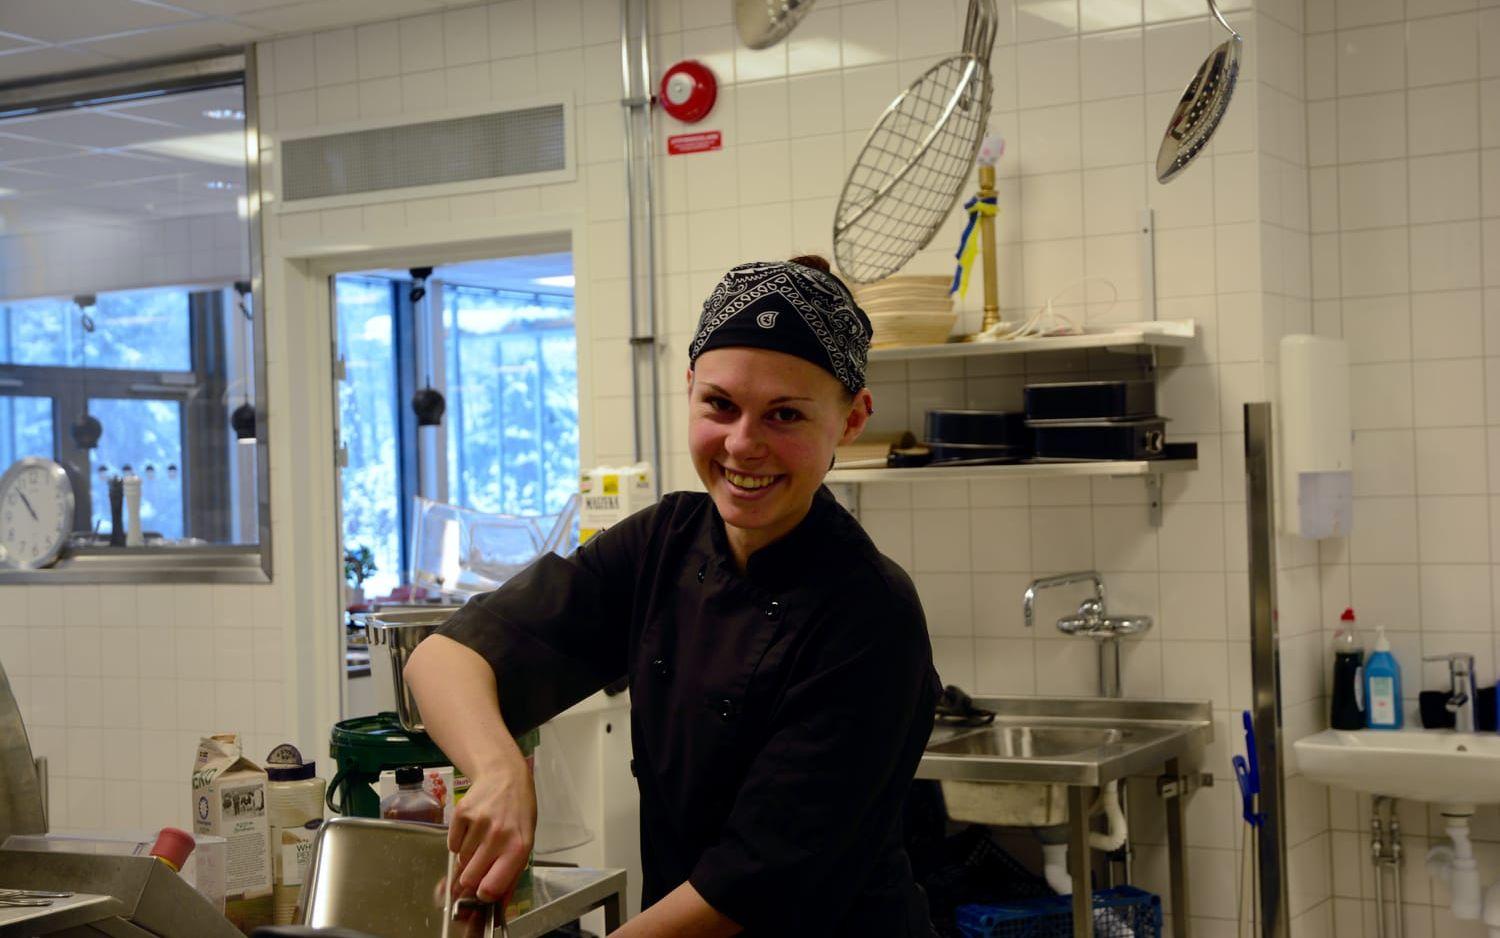 Kocken Frida Hassel ingår i en kockpool i Härryda och i dag fick hon hoppa in på Backaskolan.